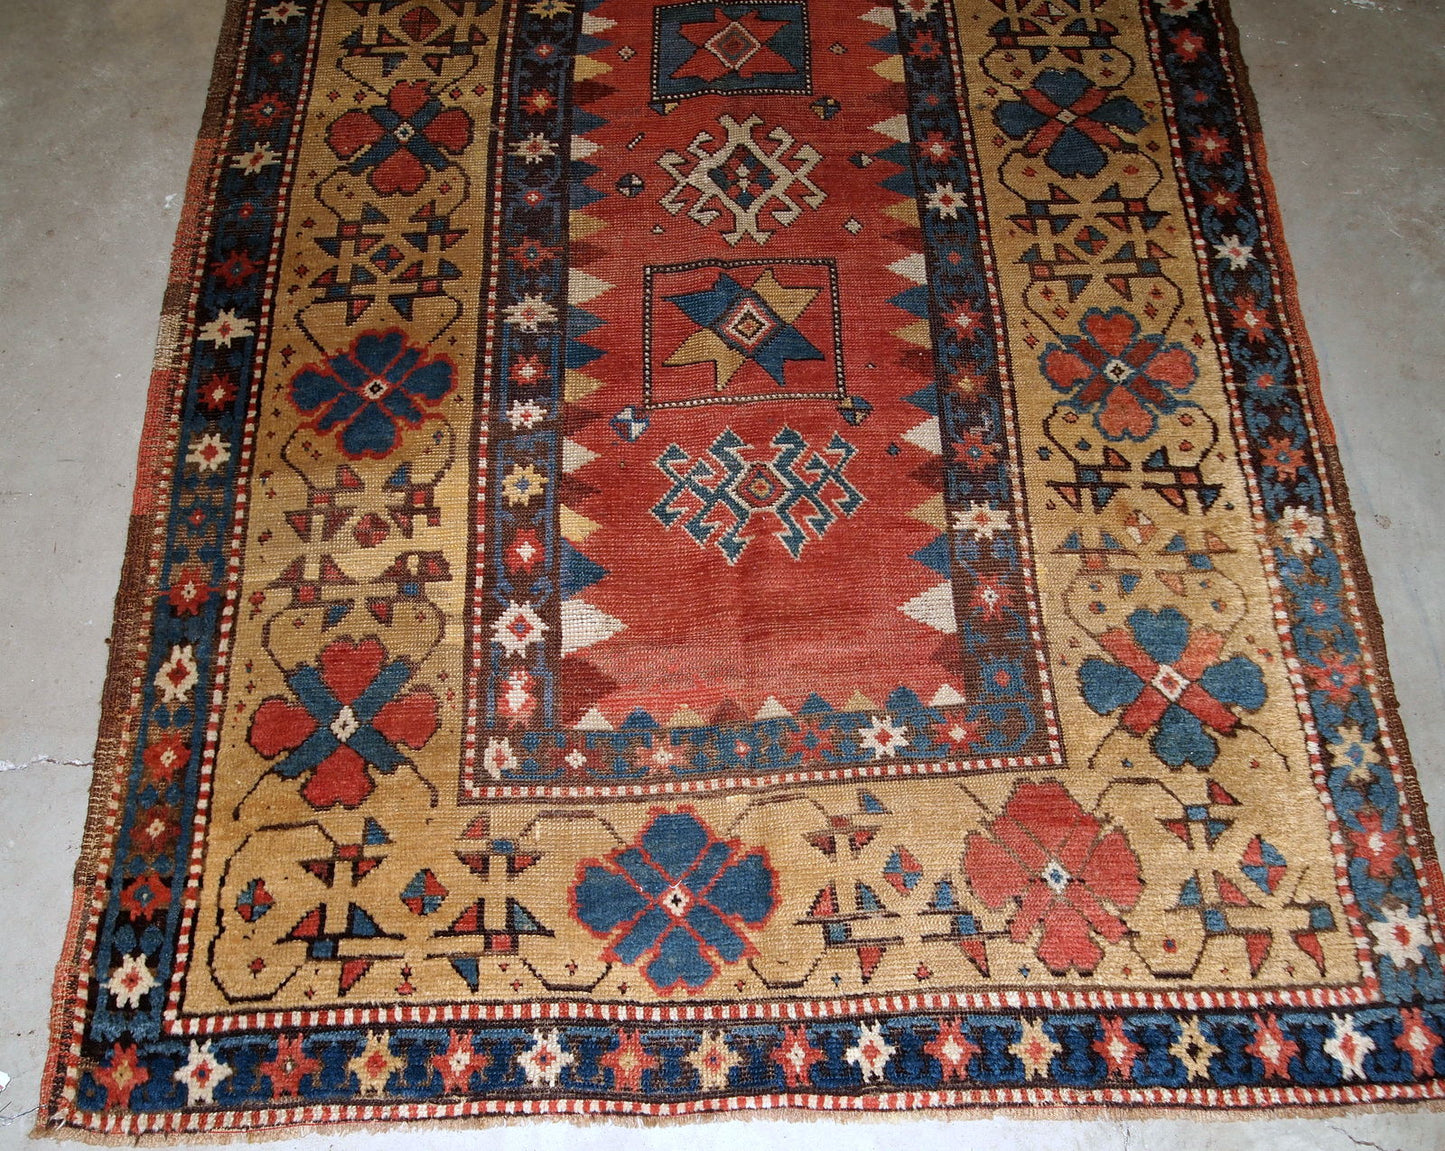 Handmade antique Caucasian Kazak rug 3.5' x 6.1' (106cm x 186cm) 1880s - 1B760